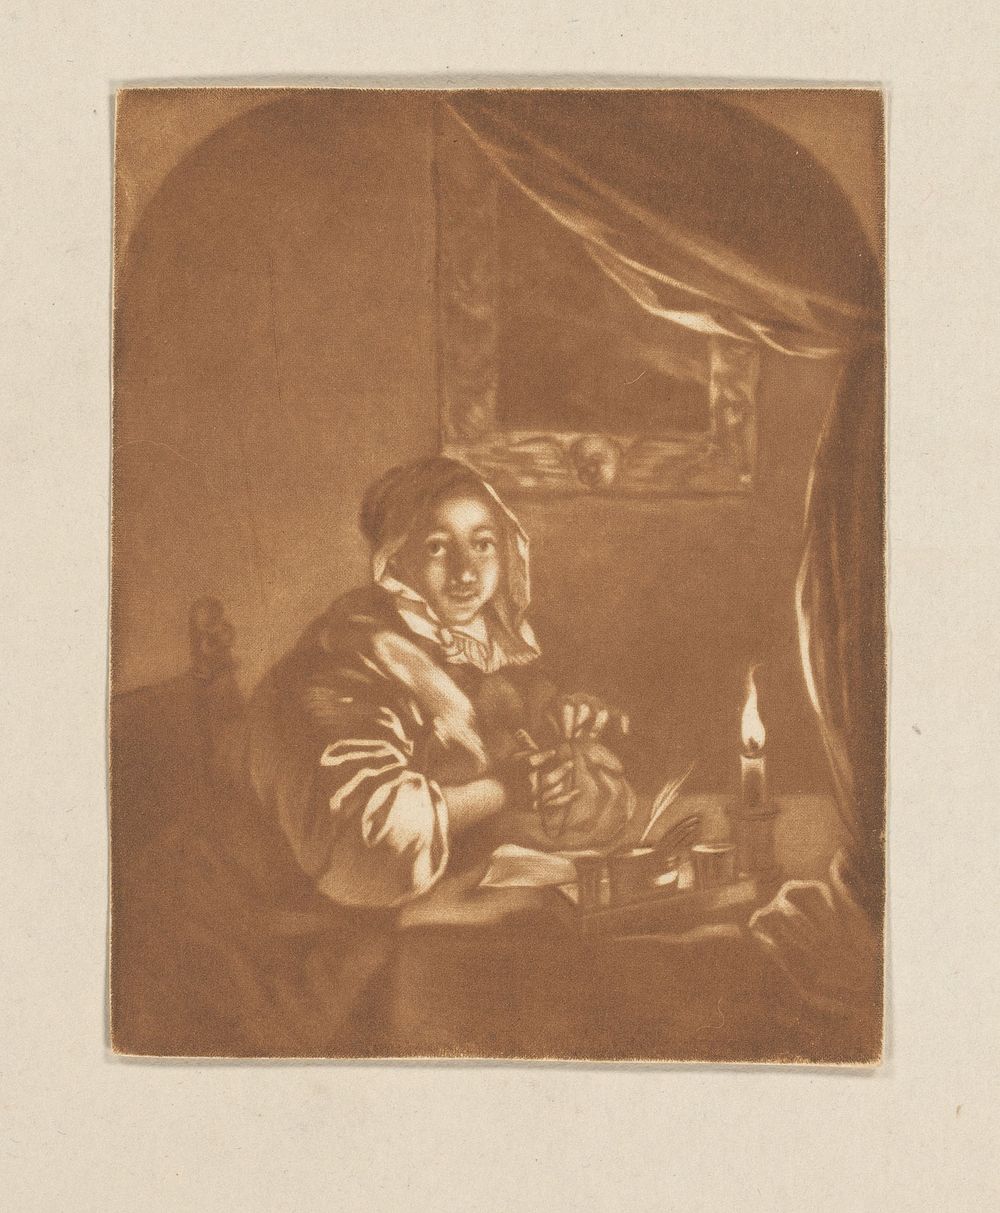 Dame bij kaarslicht (1736 - 1798) by Cornelis Ploos van Amstel and Caspar Netscher